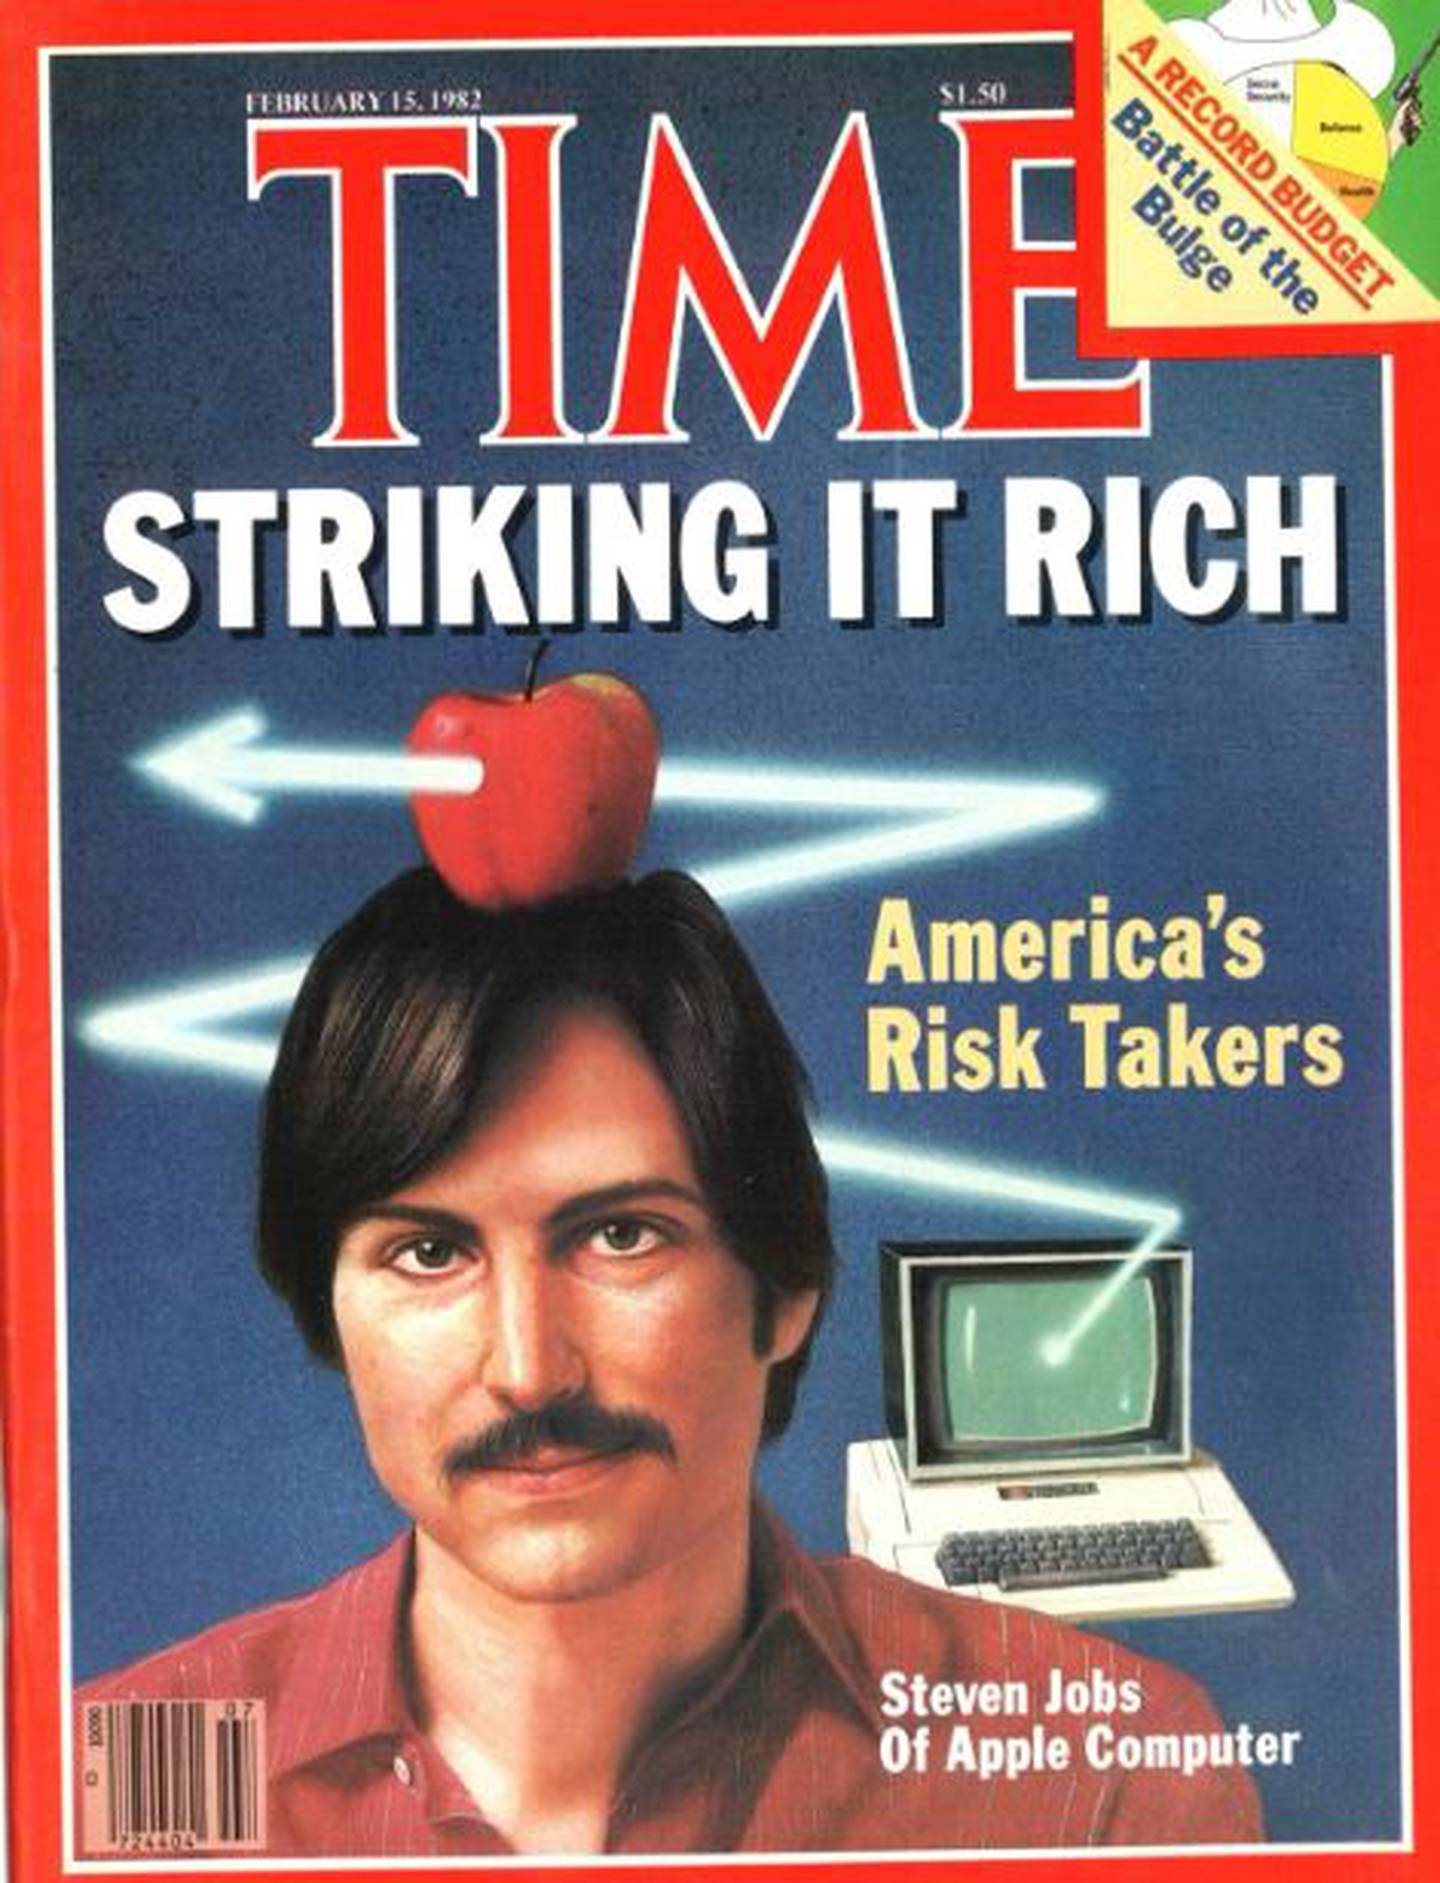 La primera portada de Time en la que apareció Steve Jobs, fundador de Apple.